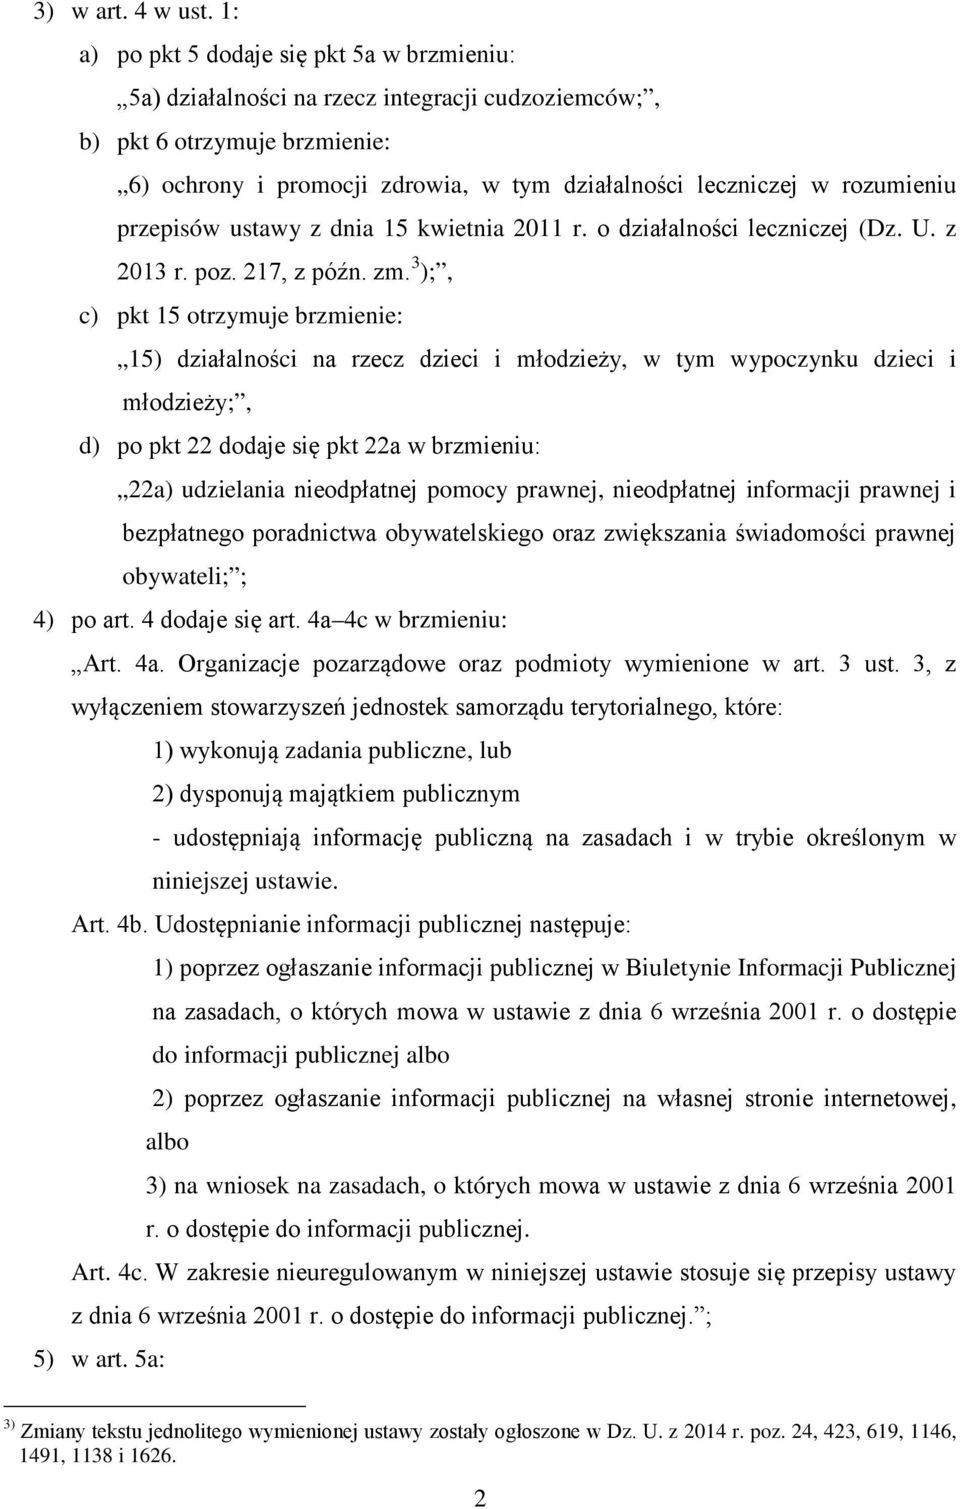 rozumieniu przepisów ustawy z dnia 15 kwietnia 2011 r. o działalności leczniczej (Dz. U. z 2013 r. poz. 217, z późn. zm.